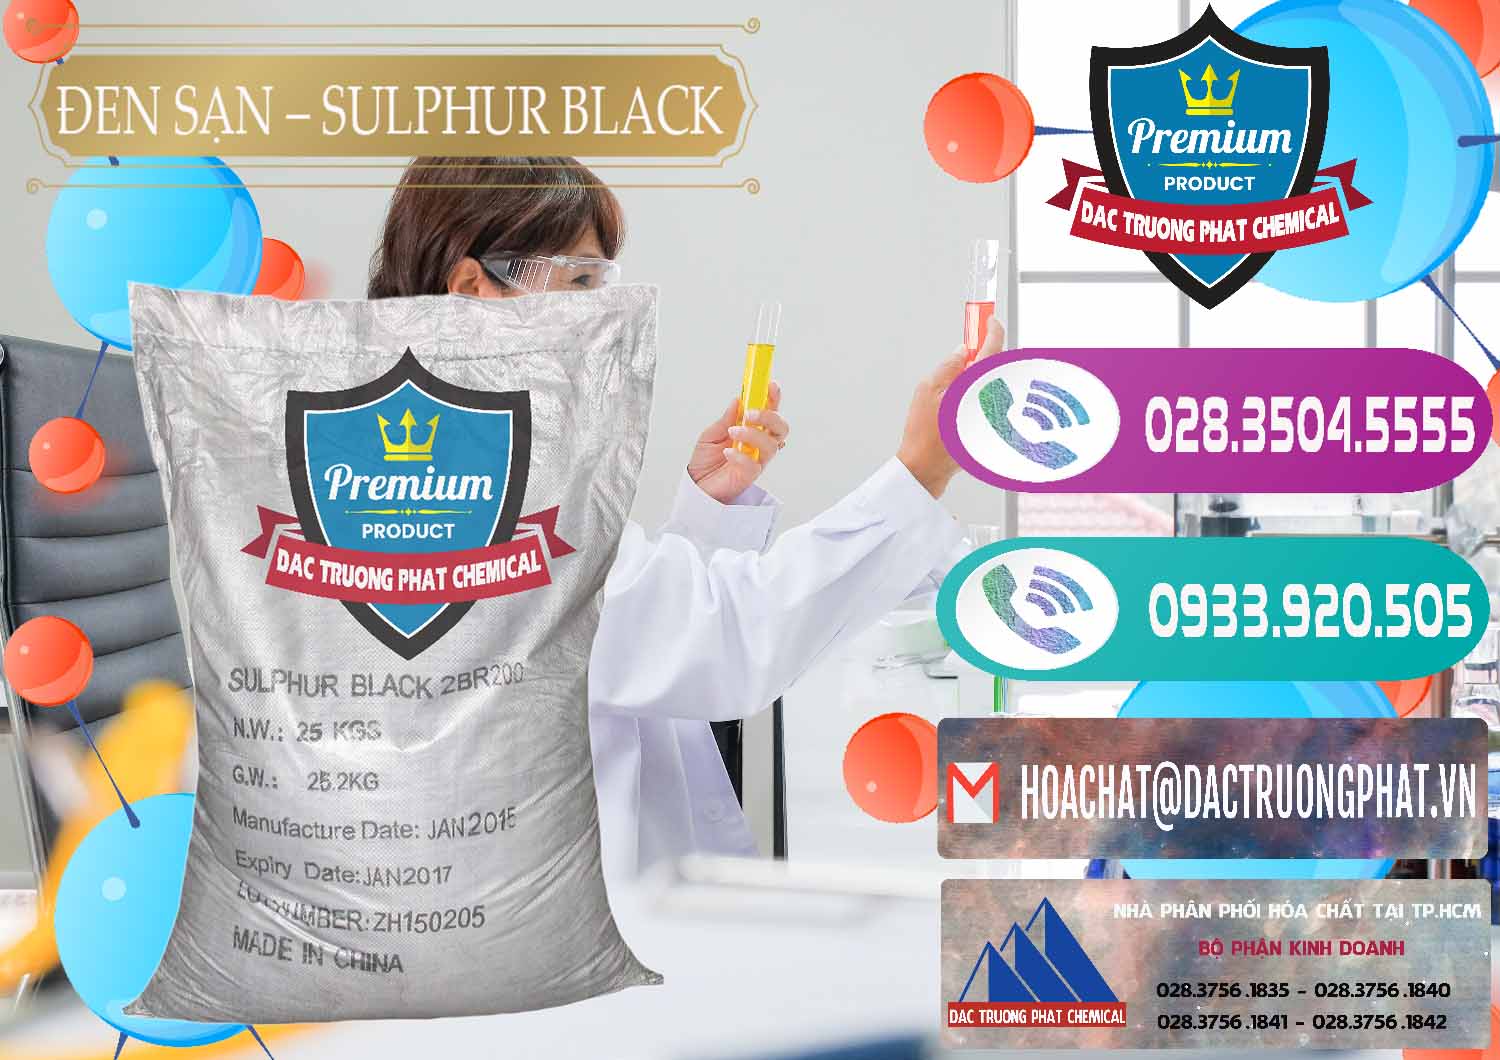 Nơi bán - cung ứng Đen Sạn – Sulphur Black Trung Quốc China - 0062 - Cty bán & cung cấp hóa chất tại TP.HCM - hoachatxulynuoc.com